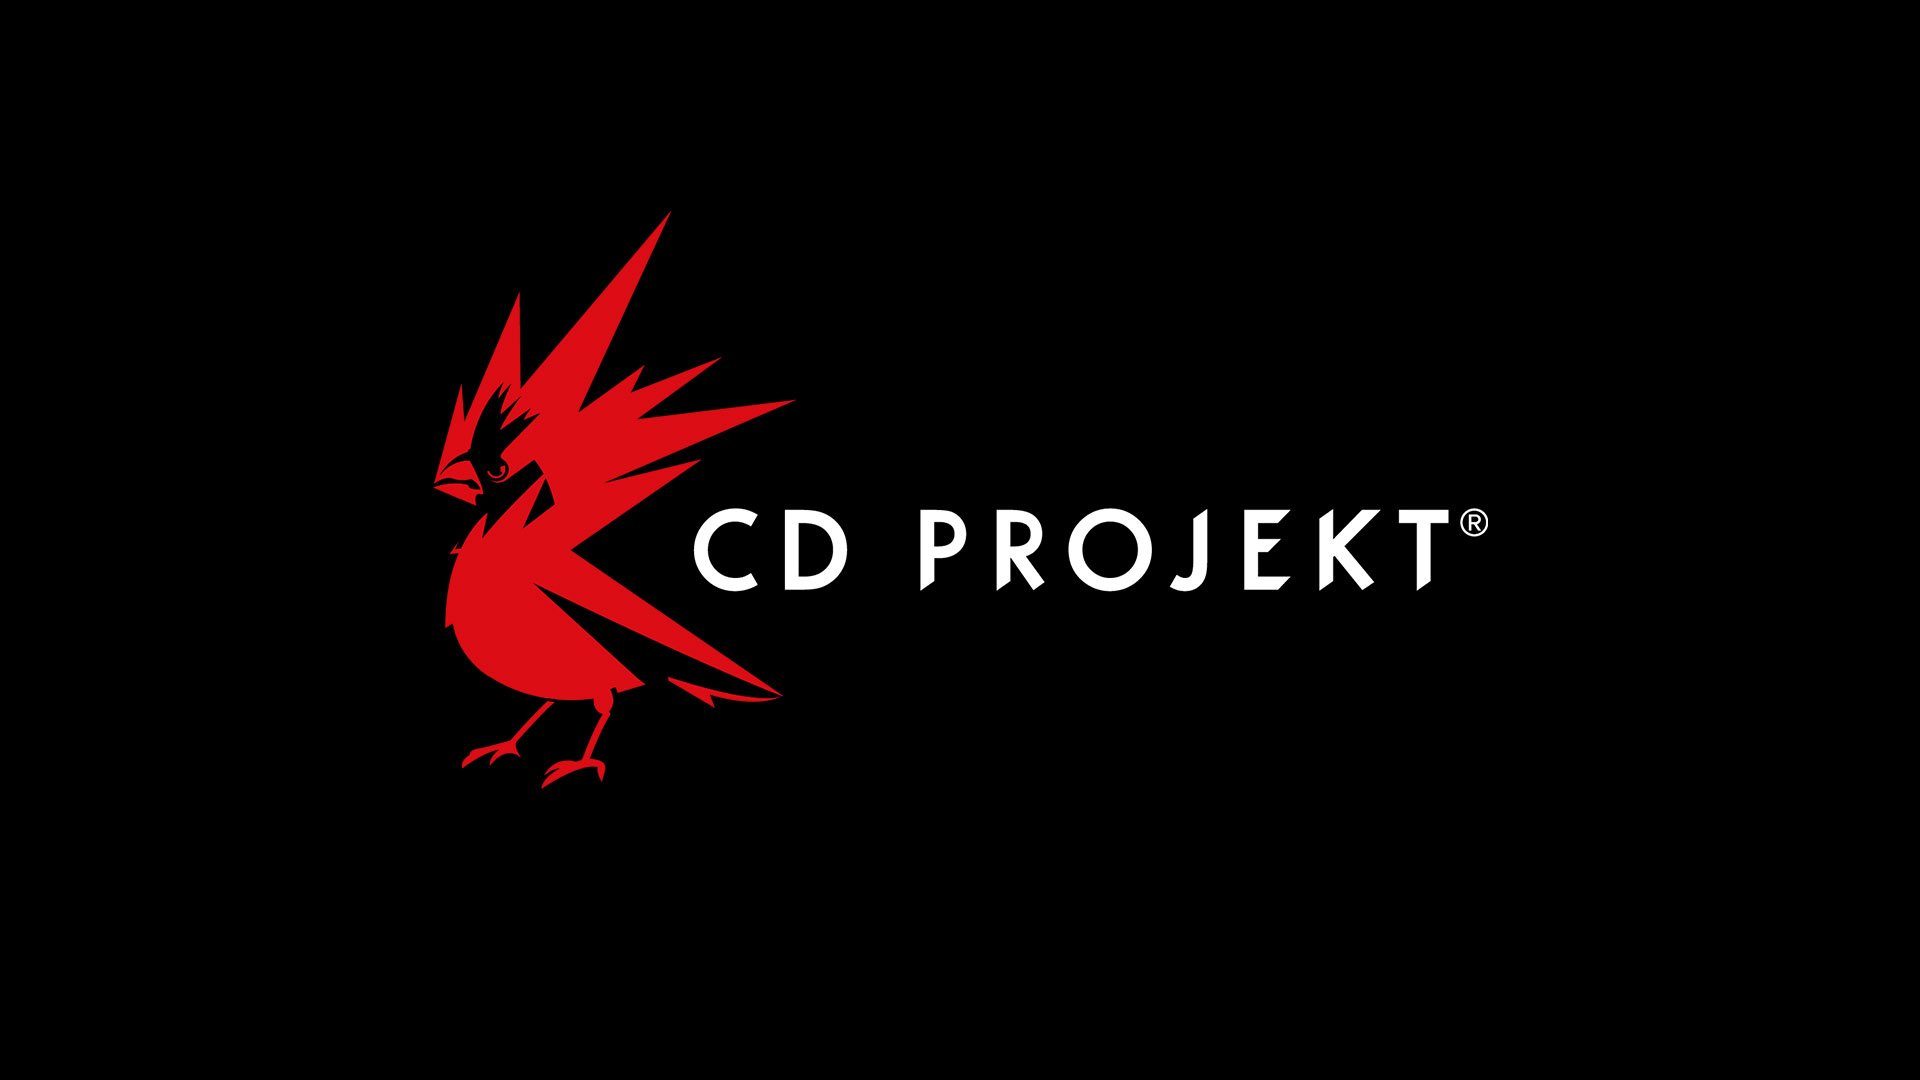 تعدیل نیروی عظیم شرکت CD Projekt RED خبر ساز شد